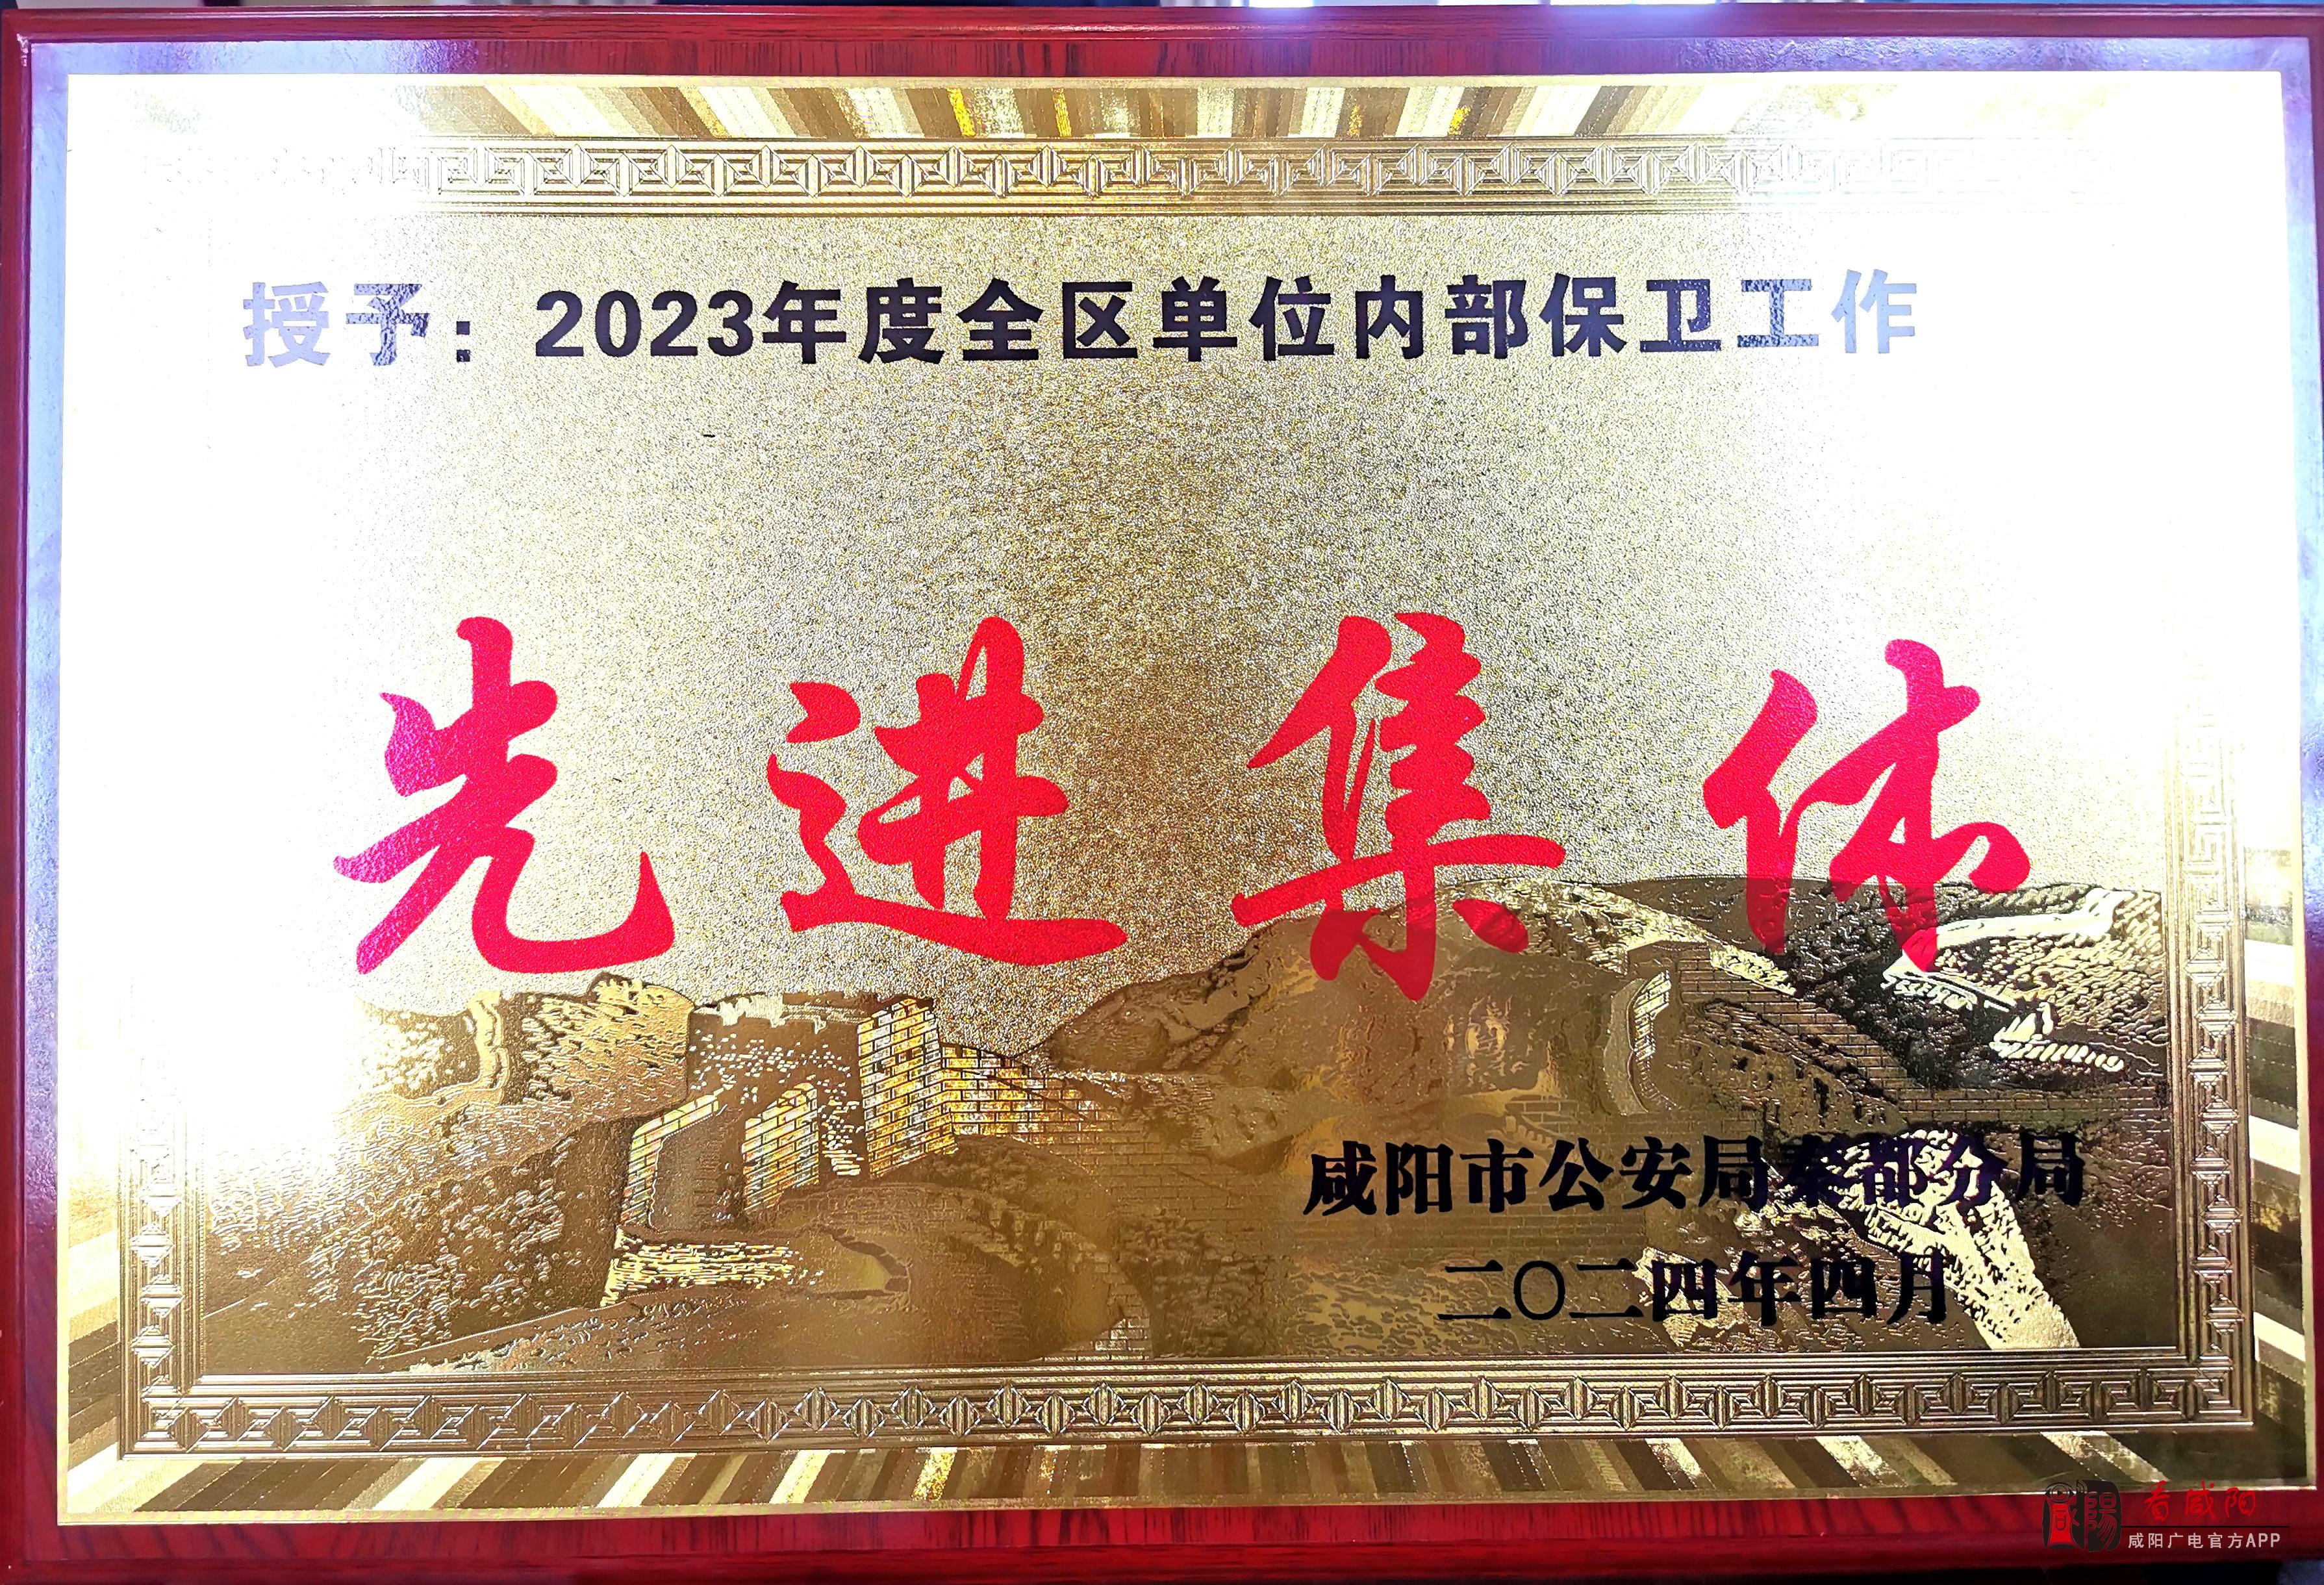 咸阳市广播电视台荣获“2023年度全区单位内部保卫工作成绩突出集体”荣誉称号